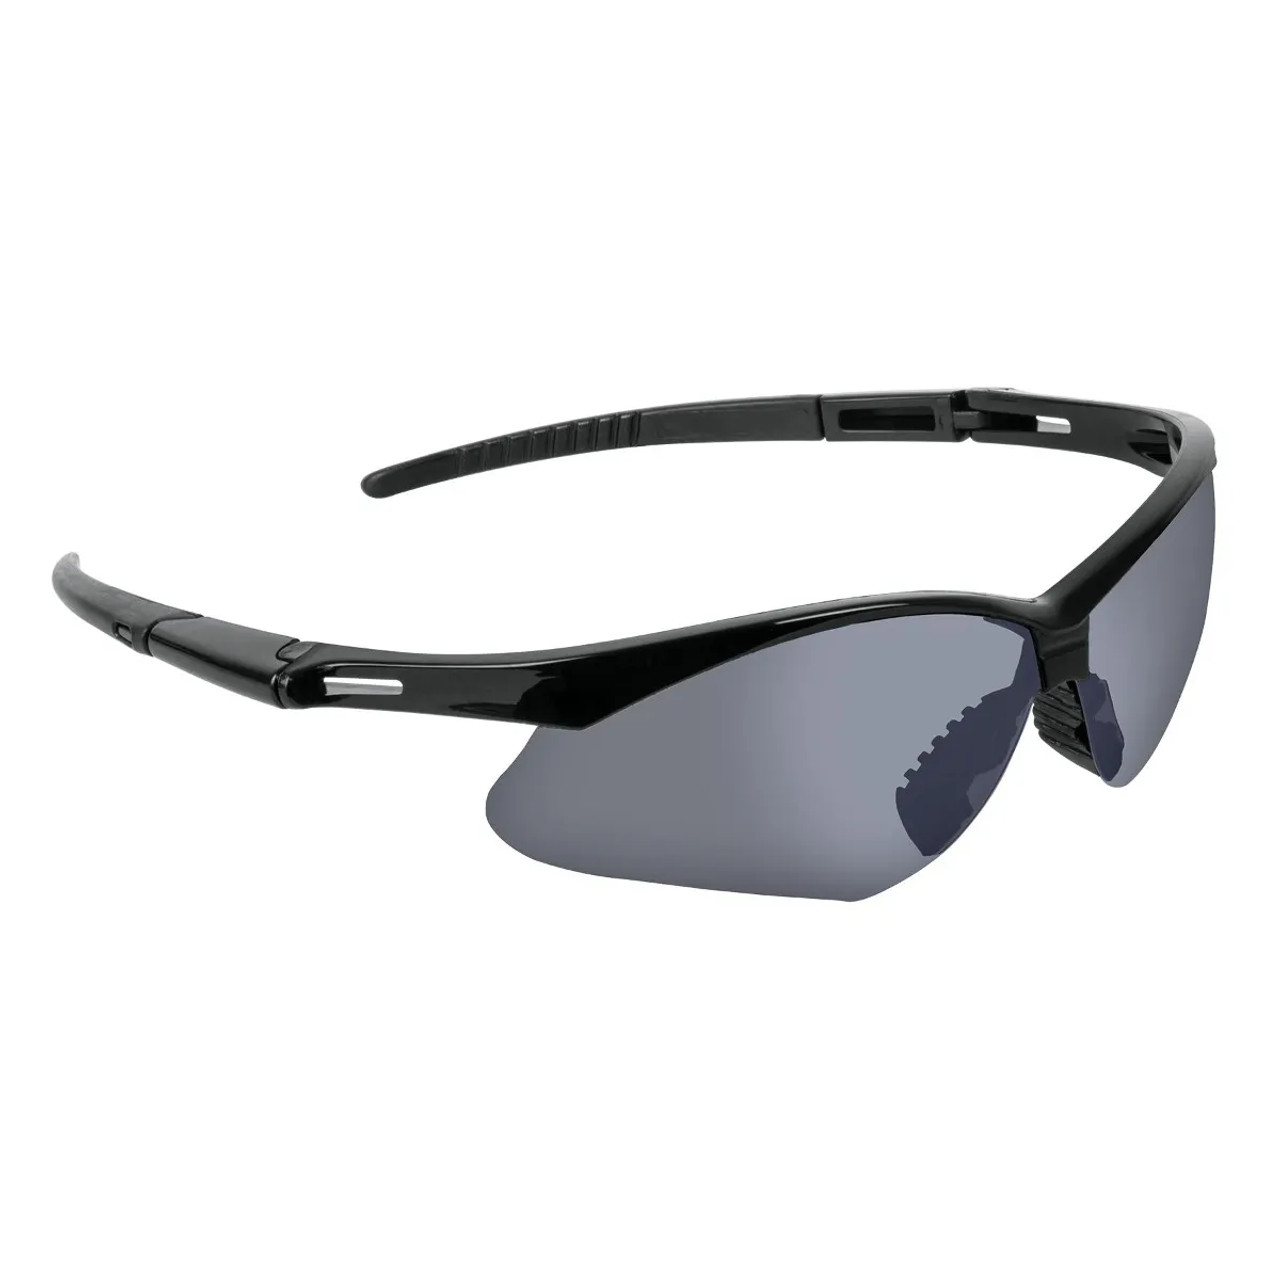 Truper Sport Eyewear Silver Mirror Lens W/strap-2 Pack #15182